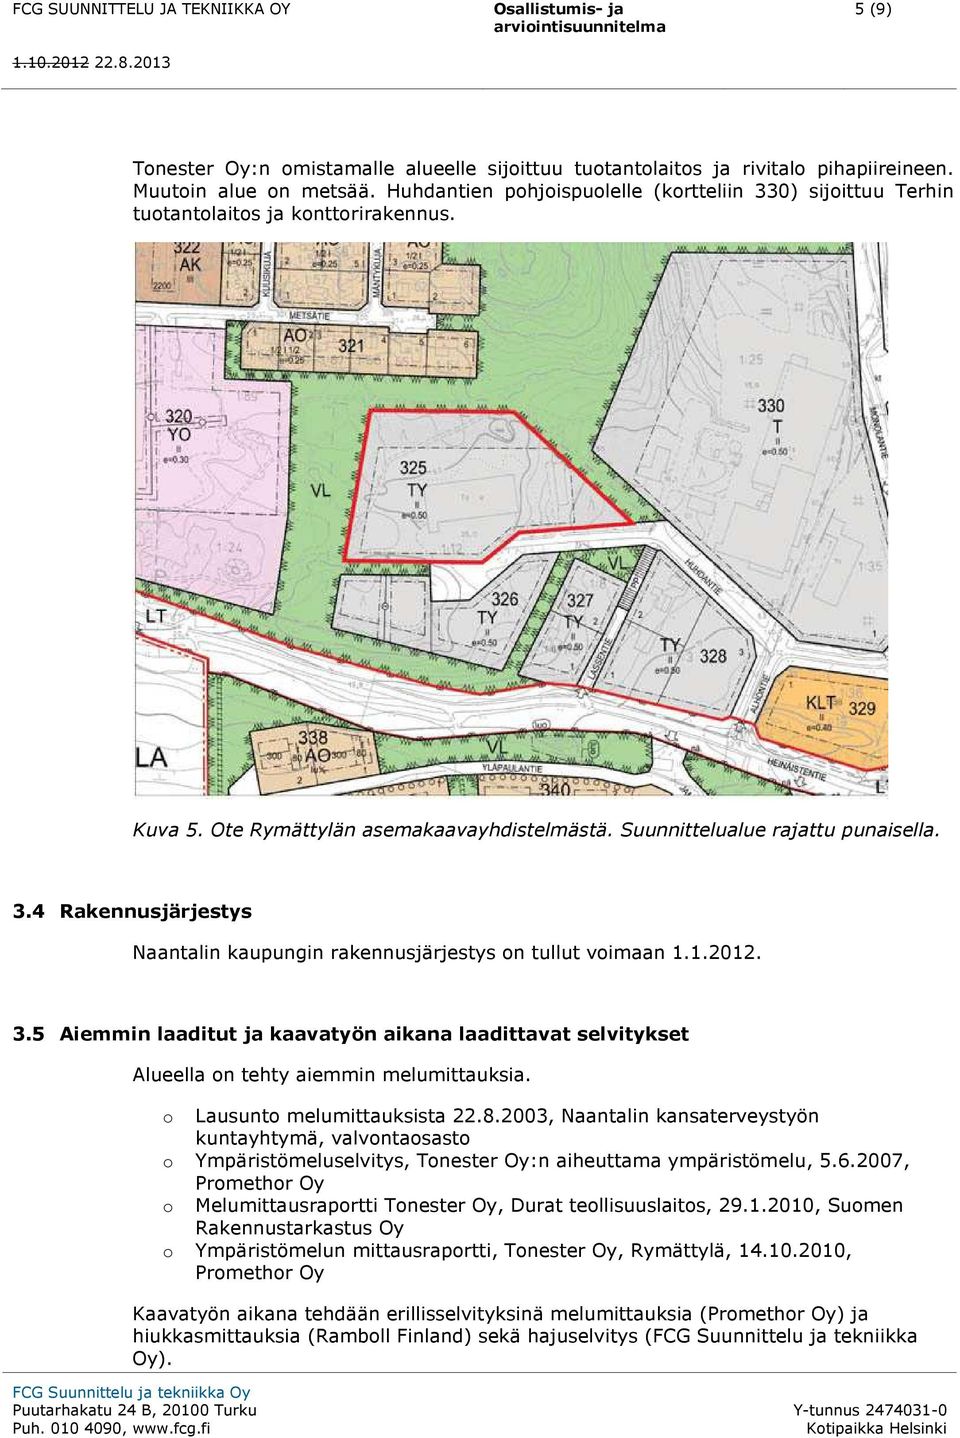 Suunnittelualue rajattu punaisella. 3.4 Rakennusjärjestys Naantalin kaupungin rakennusjärjestys on tullut voimaan 1.1.2012. 3.5 Aiemmin laaditut ja kaavatyön aikana laadittavat selvitykset Alueella on tehty aiemmin melumittauksia.